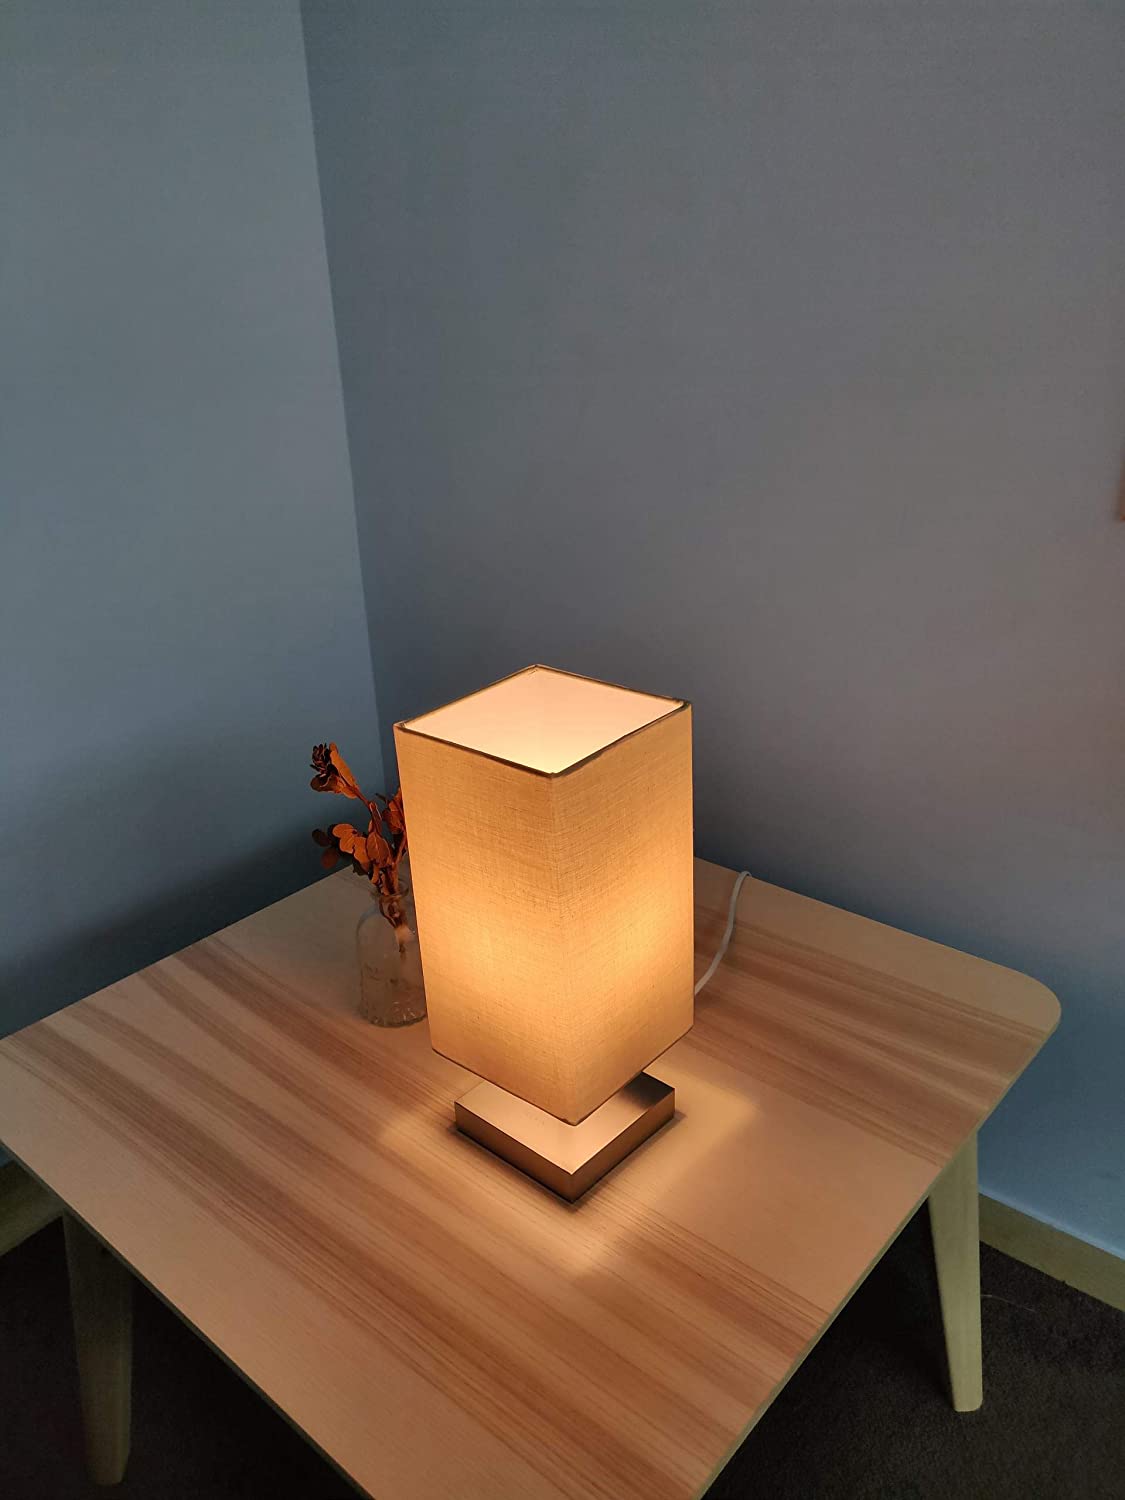 Teckin DL22 Bedside Table Lamp